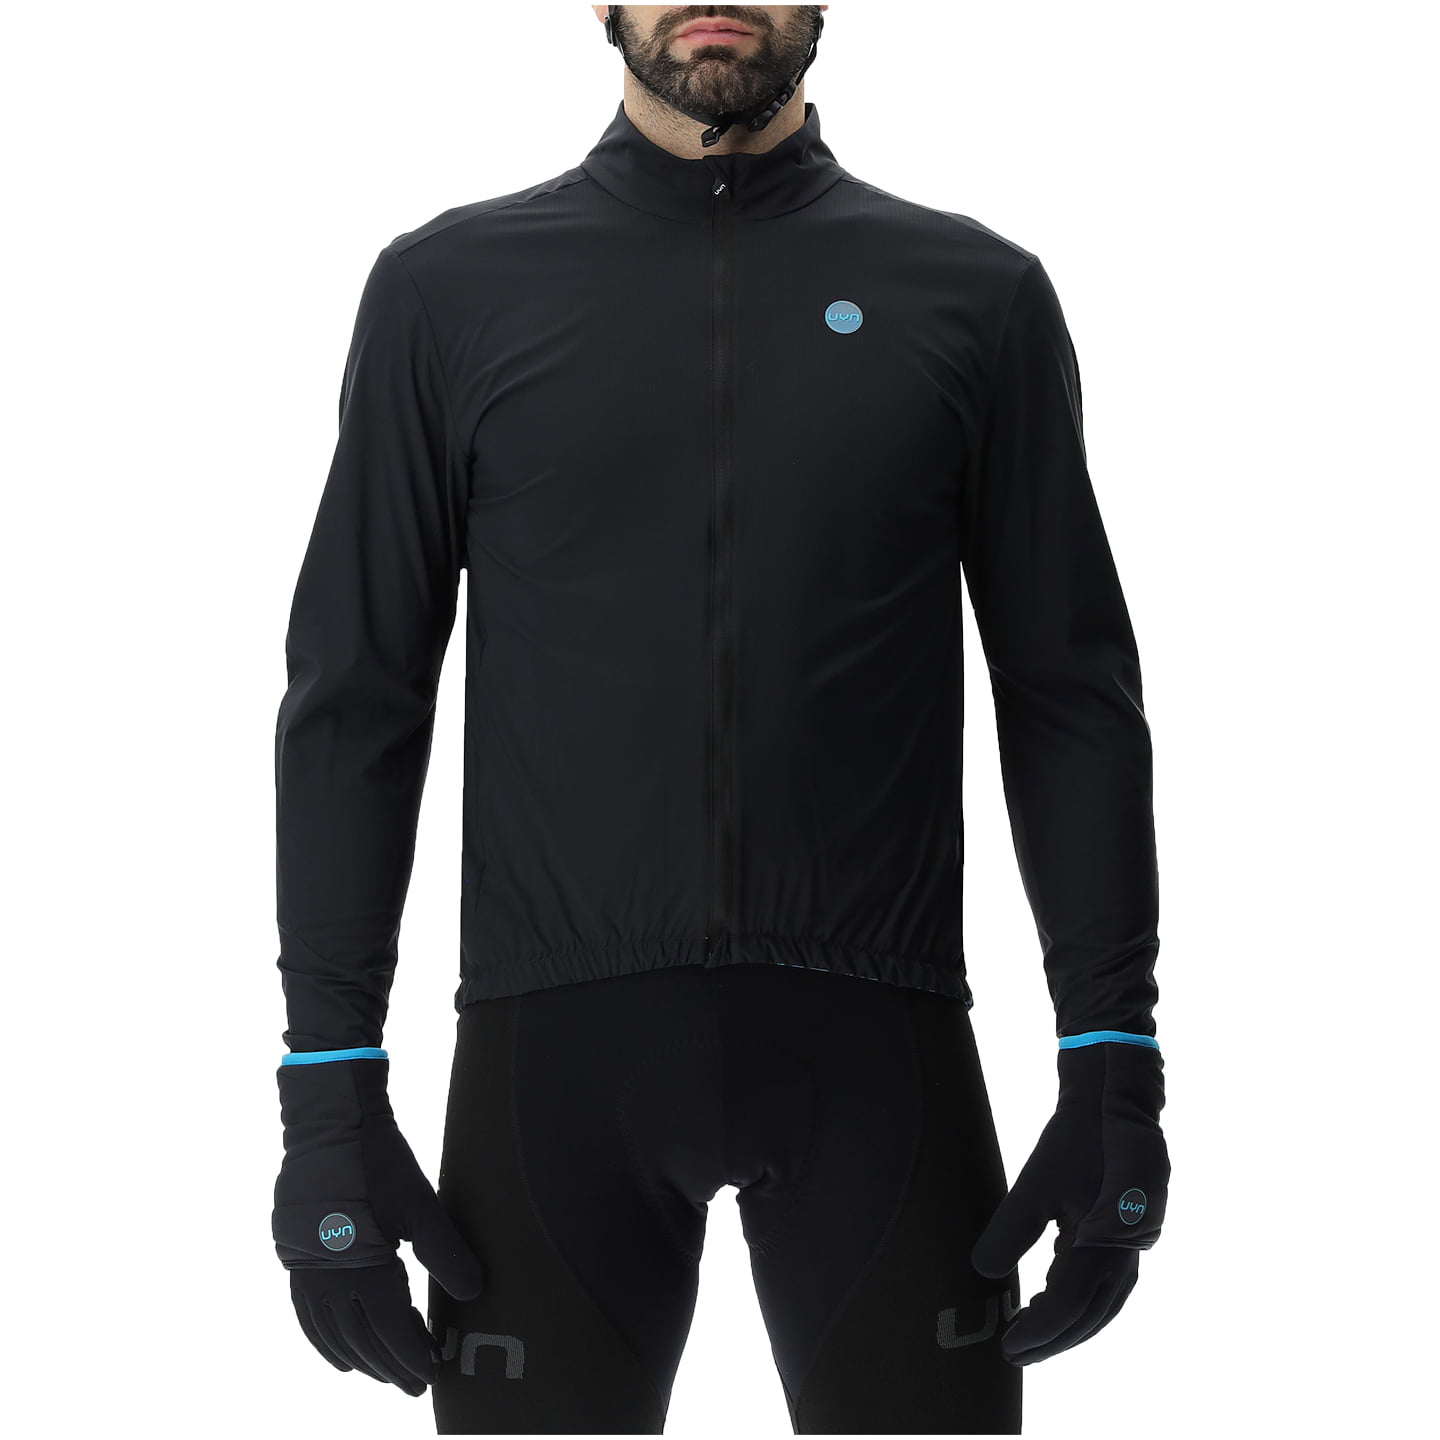 UYN Ultralight Wind Jacket, for men, size XL, Bike jacket, Cycle gear